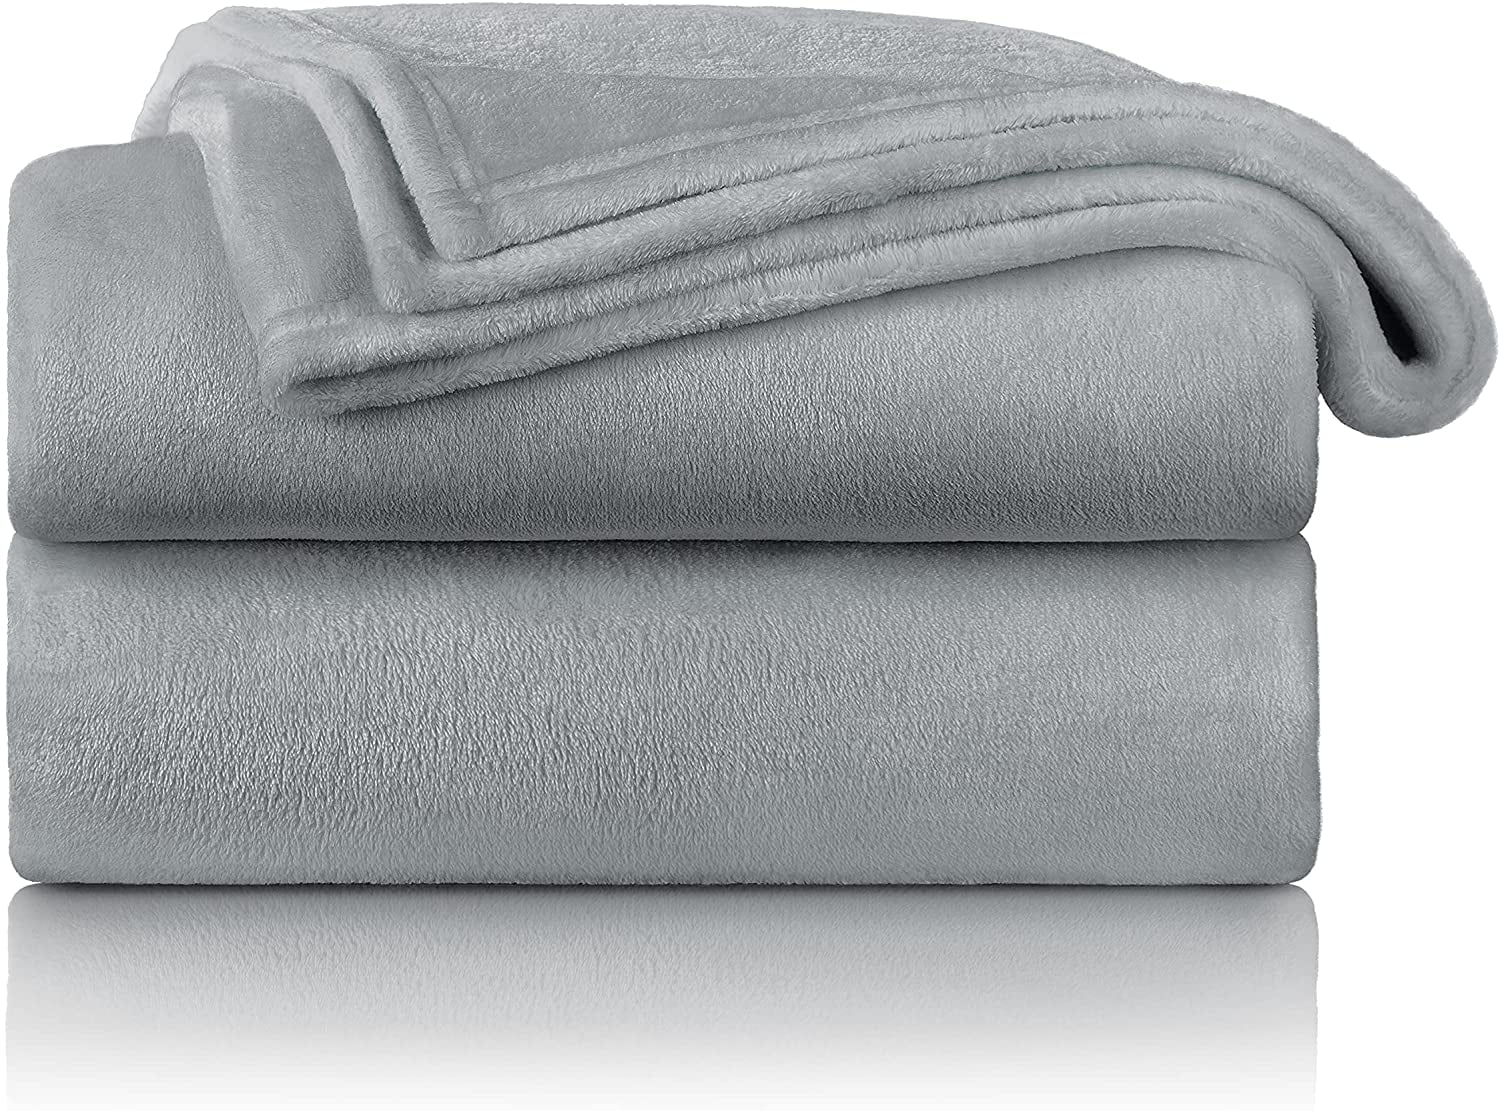 Cosy Blanket 150x200 cm Anthracite residential Blanket Microfleece Fleece Blanket Bedspread 